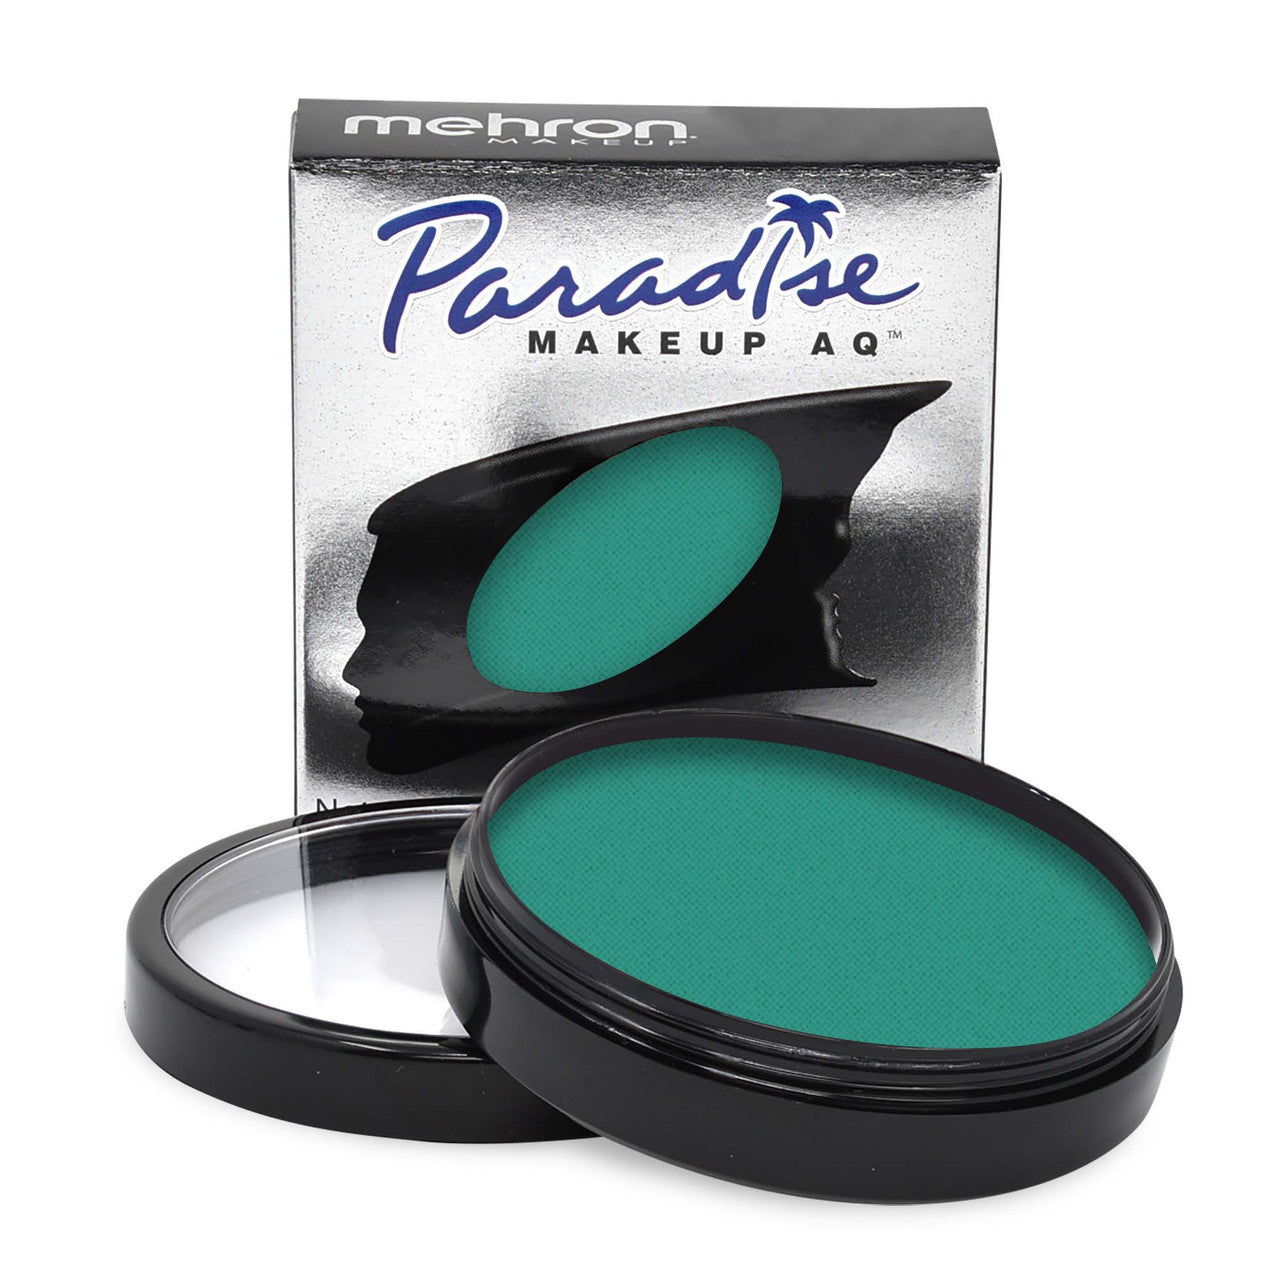 Mehron Paradise Makeup